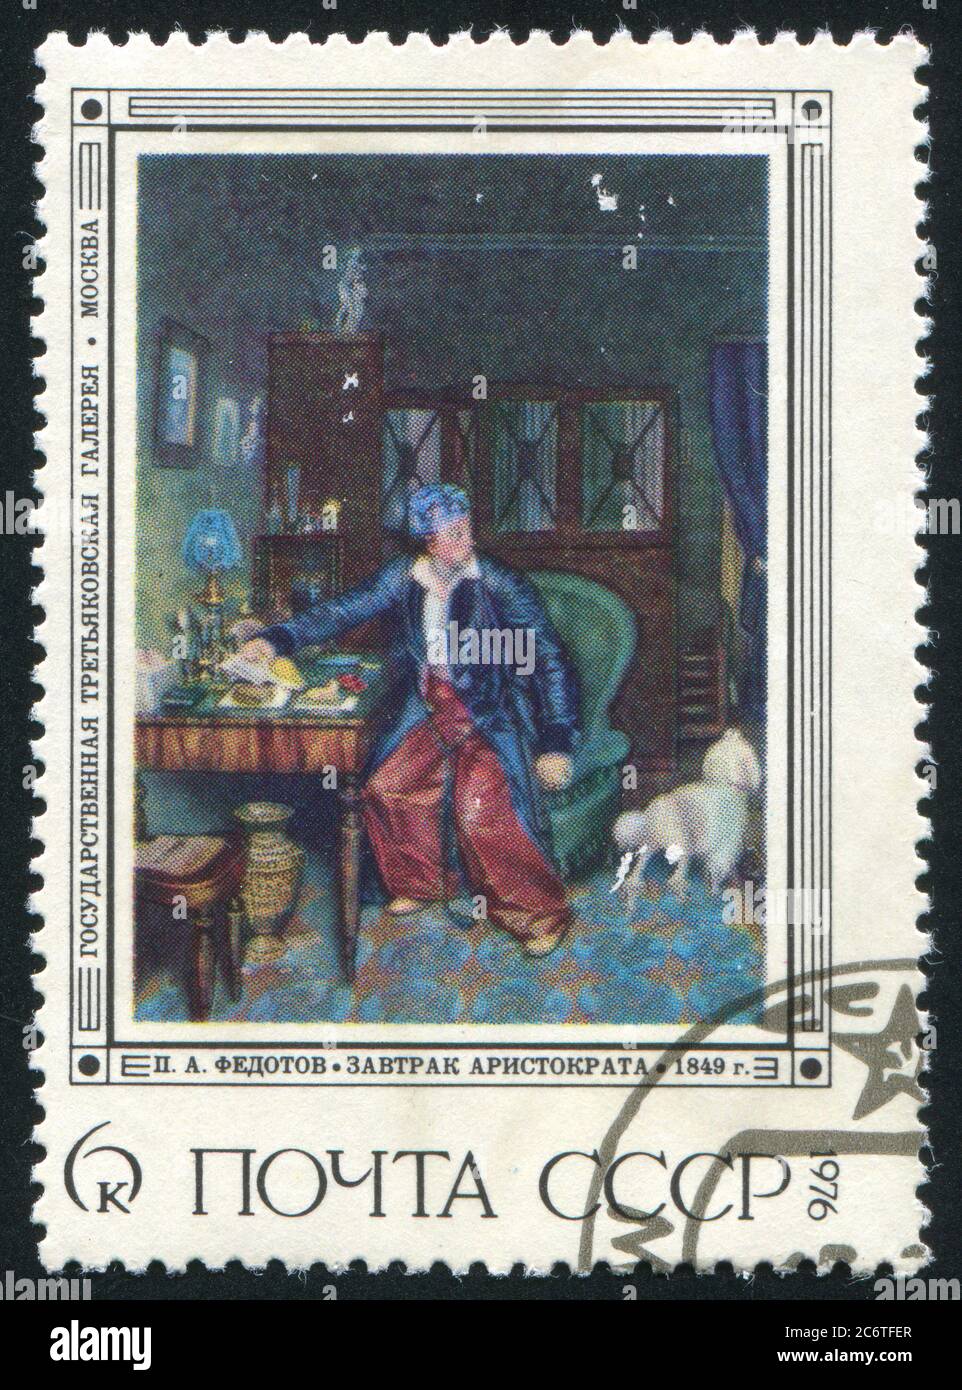 RUSSIE - VERS 1976 : timbre imprimé par la Russie, montre aristocrate's Breakfast, par P.A. Fedotov, vers 1976 Banque D'Images